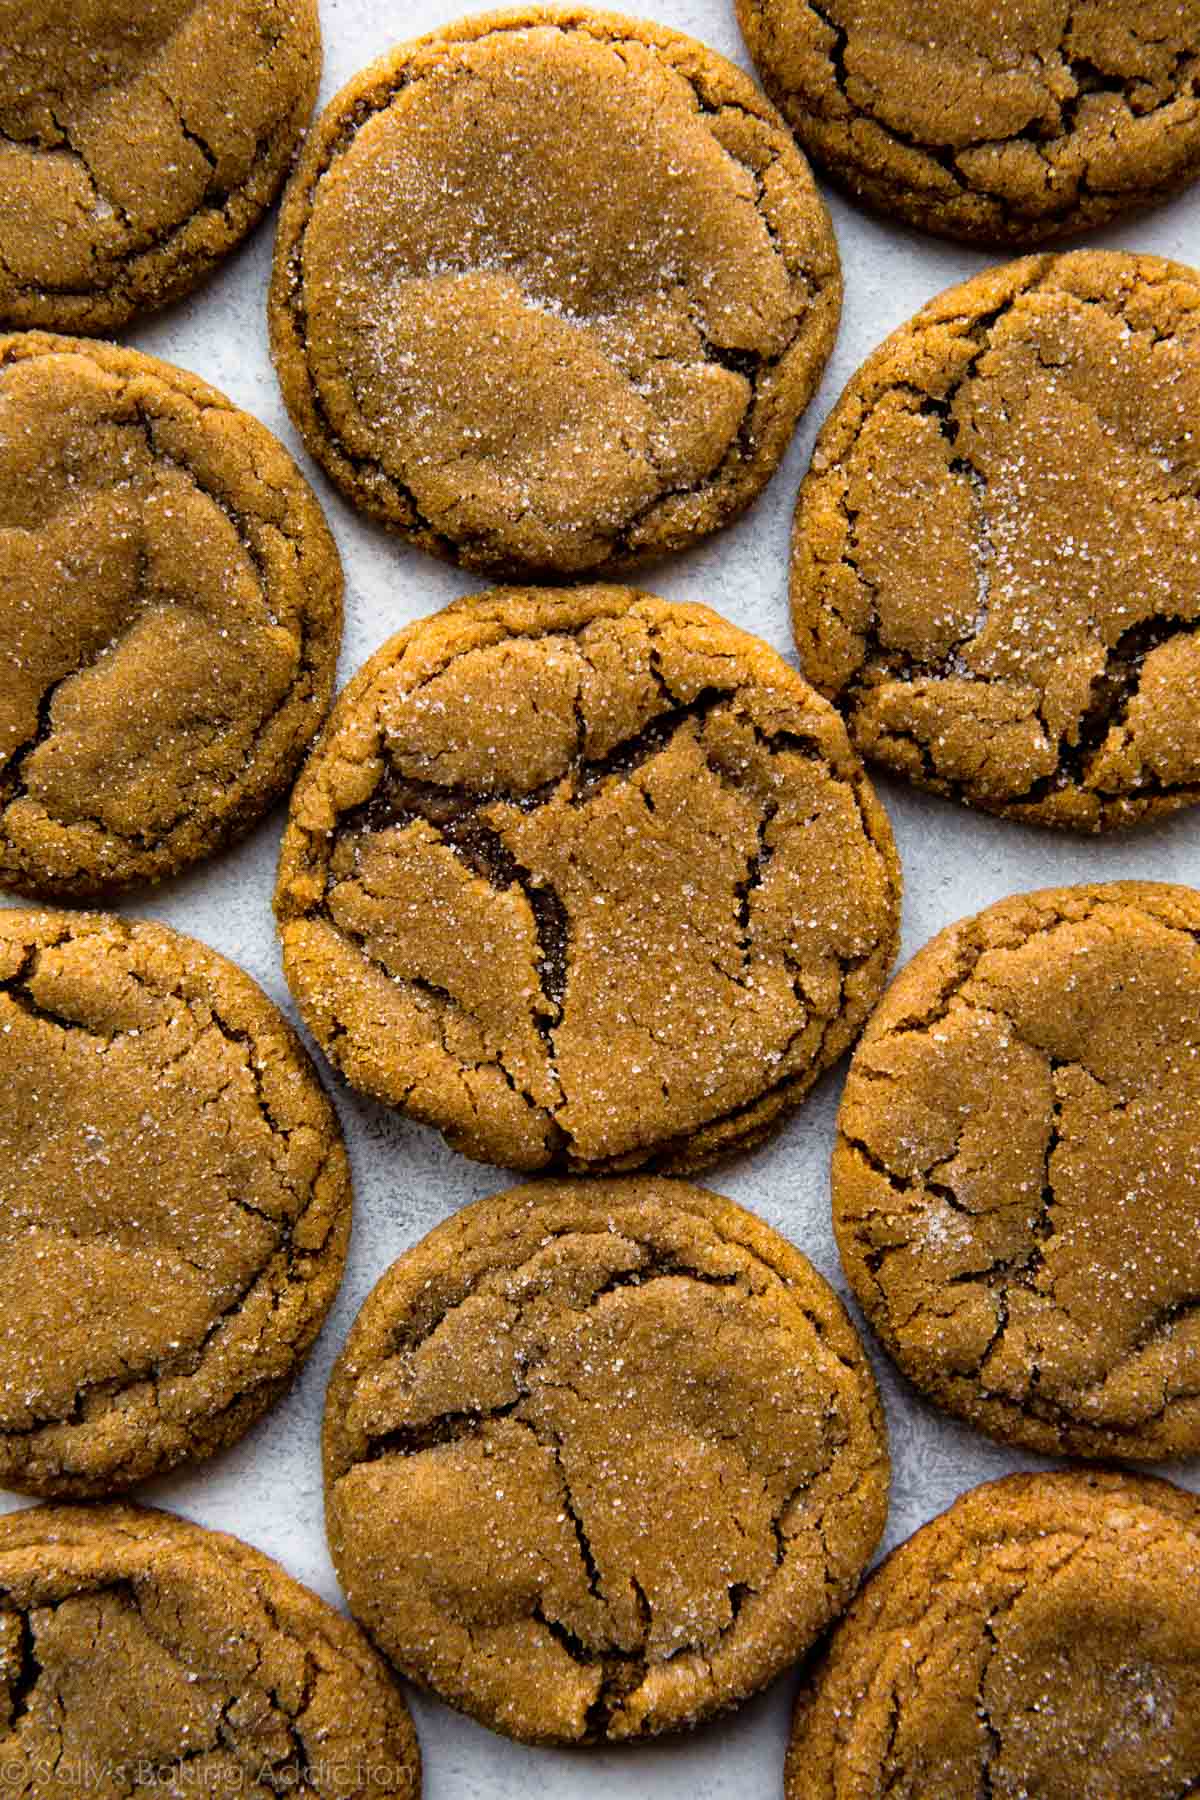 Les biscuits à la mélasse très doux et moelleux seront votre biscuit de Noël préféré! Tant de saveurs délicieuses dans une recette de biscuit facile. Recette sur sallysbakingaddiction.com